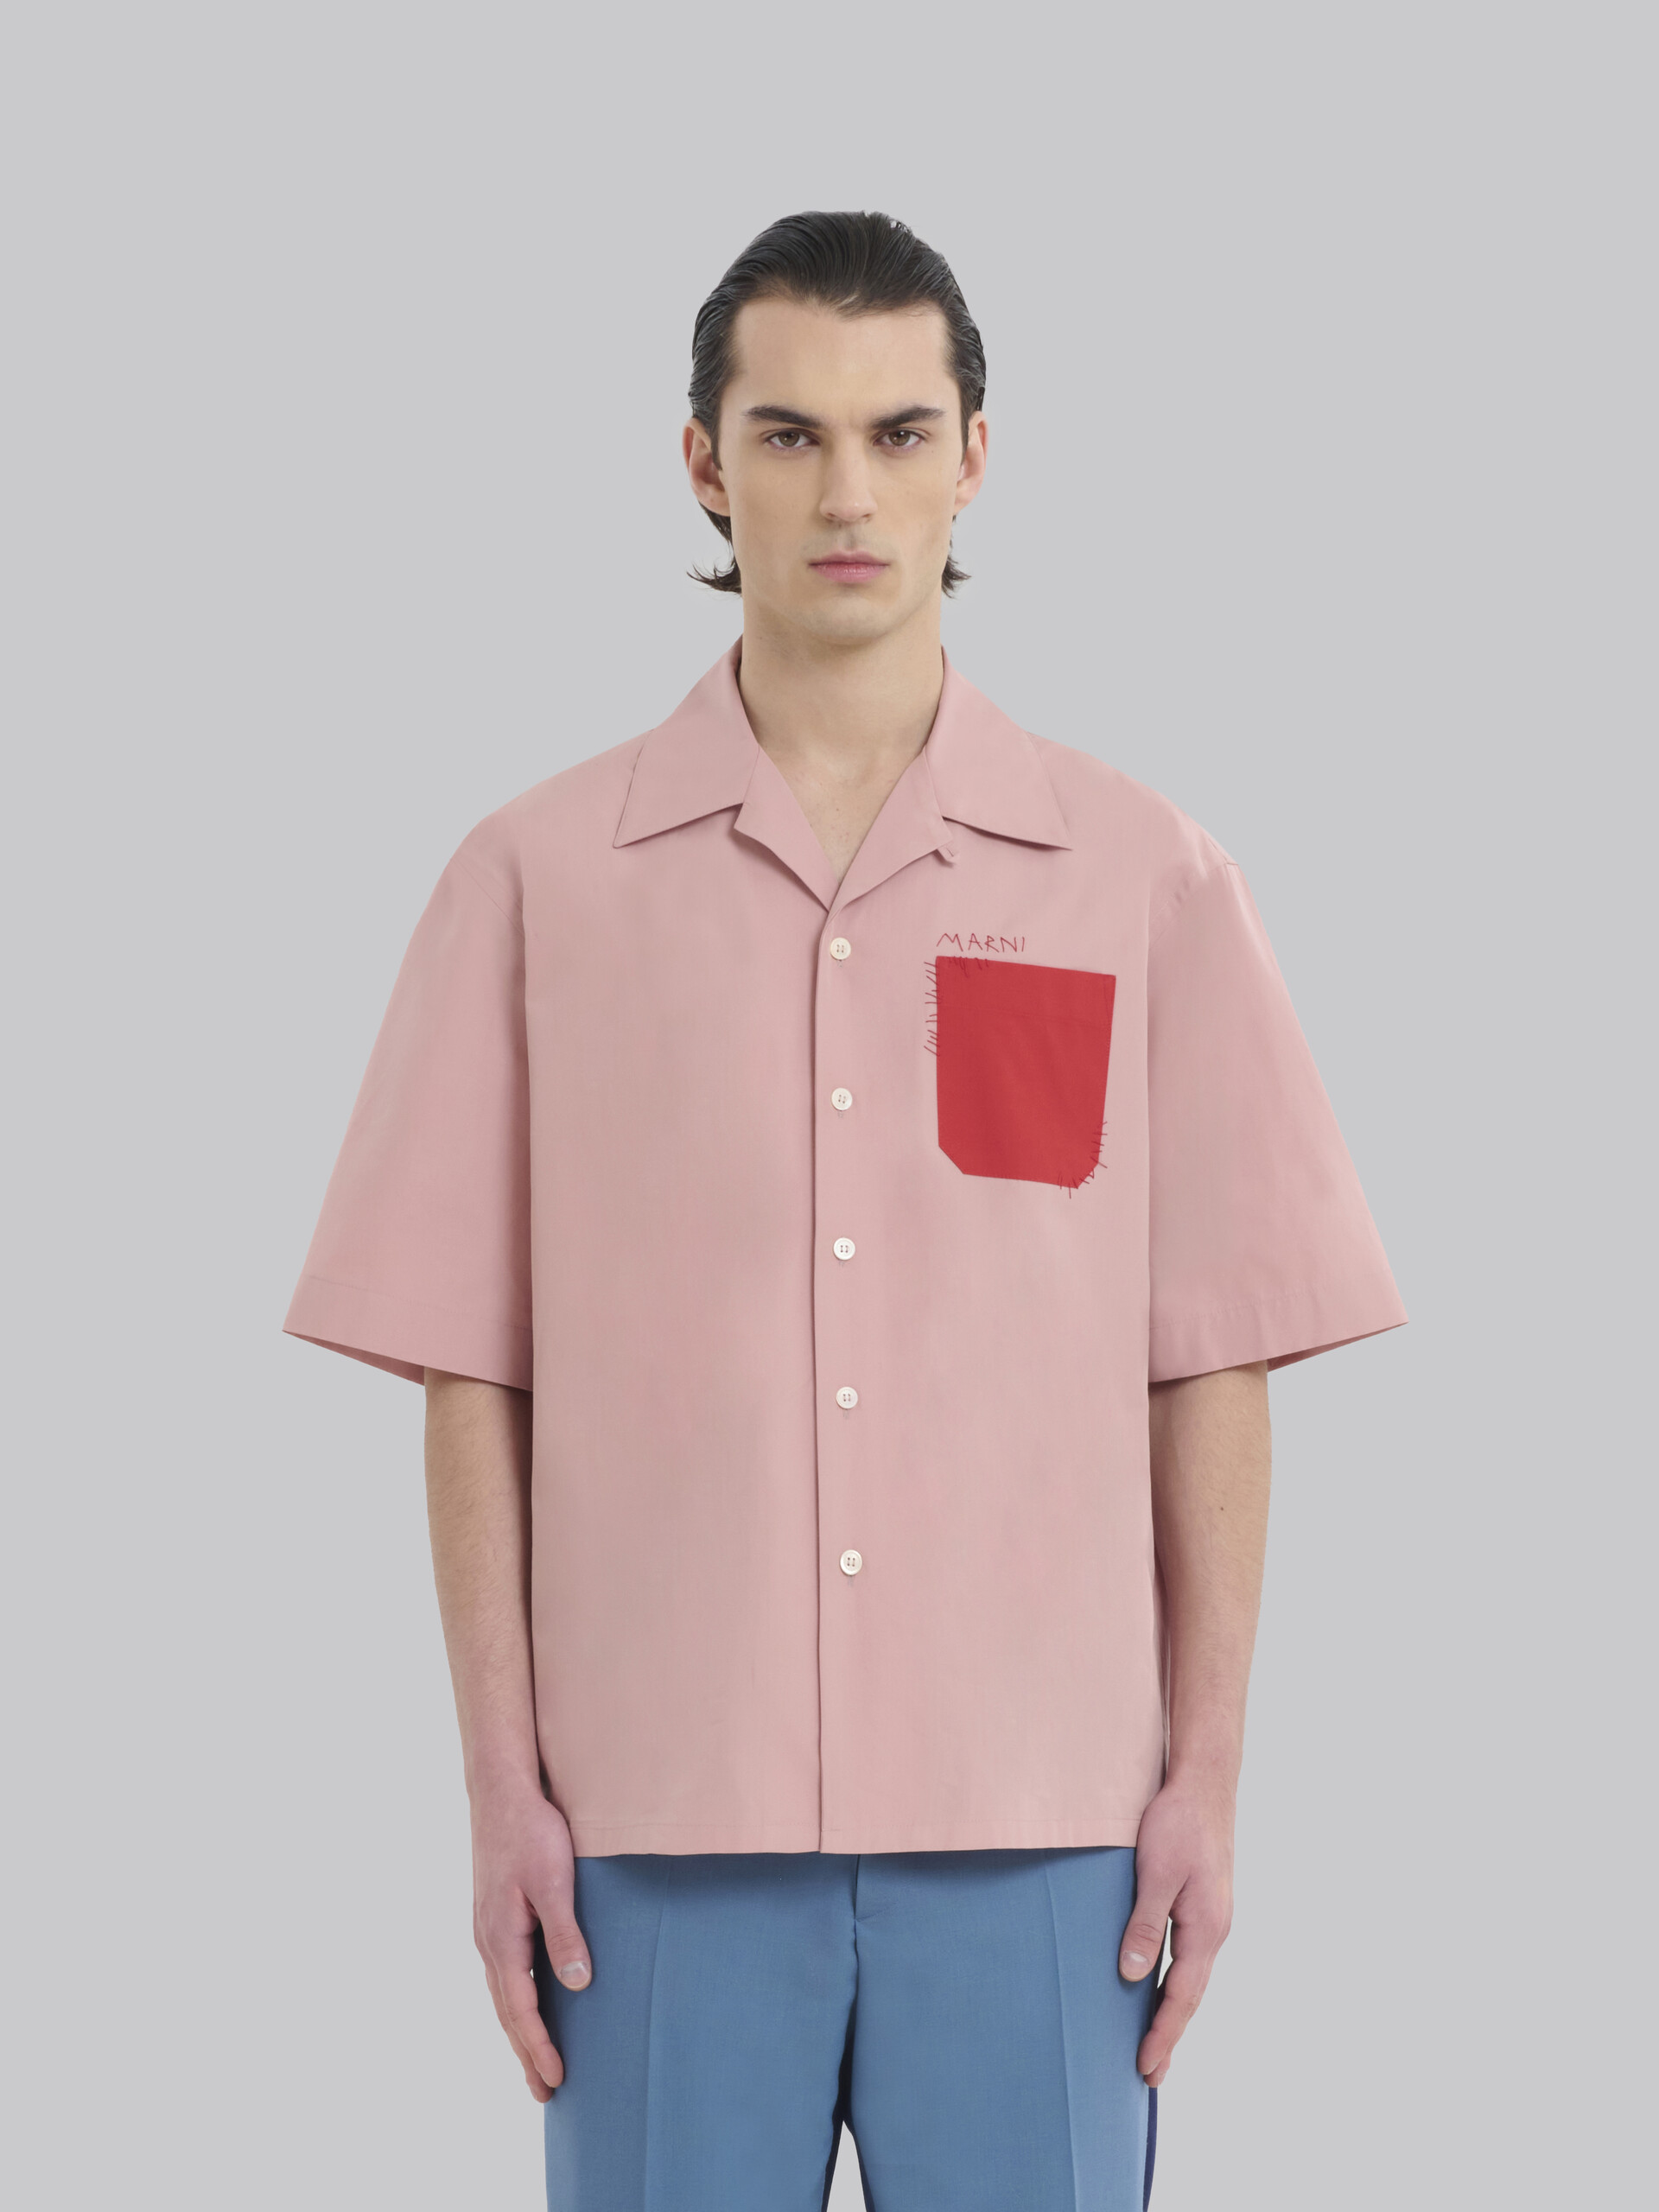 Marni YK Jeong - 유기농 핑크 포플린 볼링 셔츠 - 셔츠 - Image 2